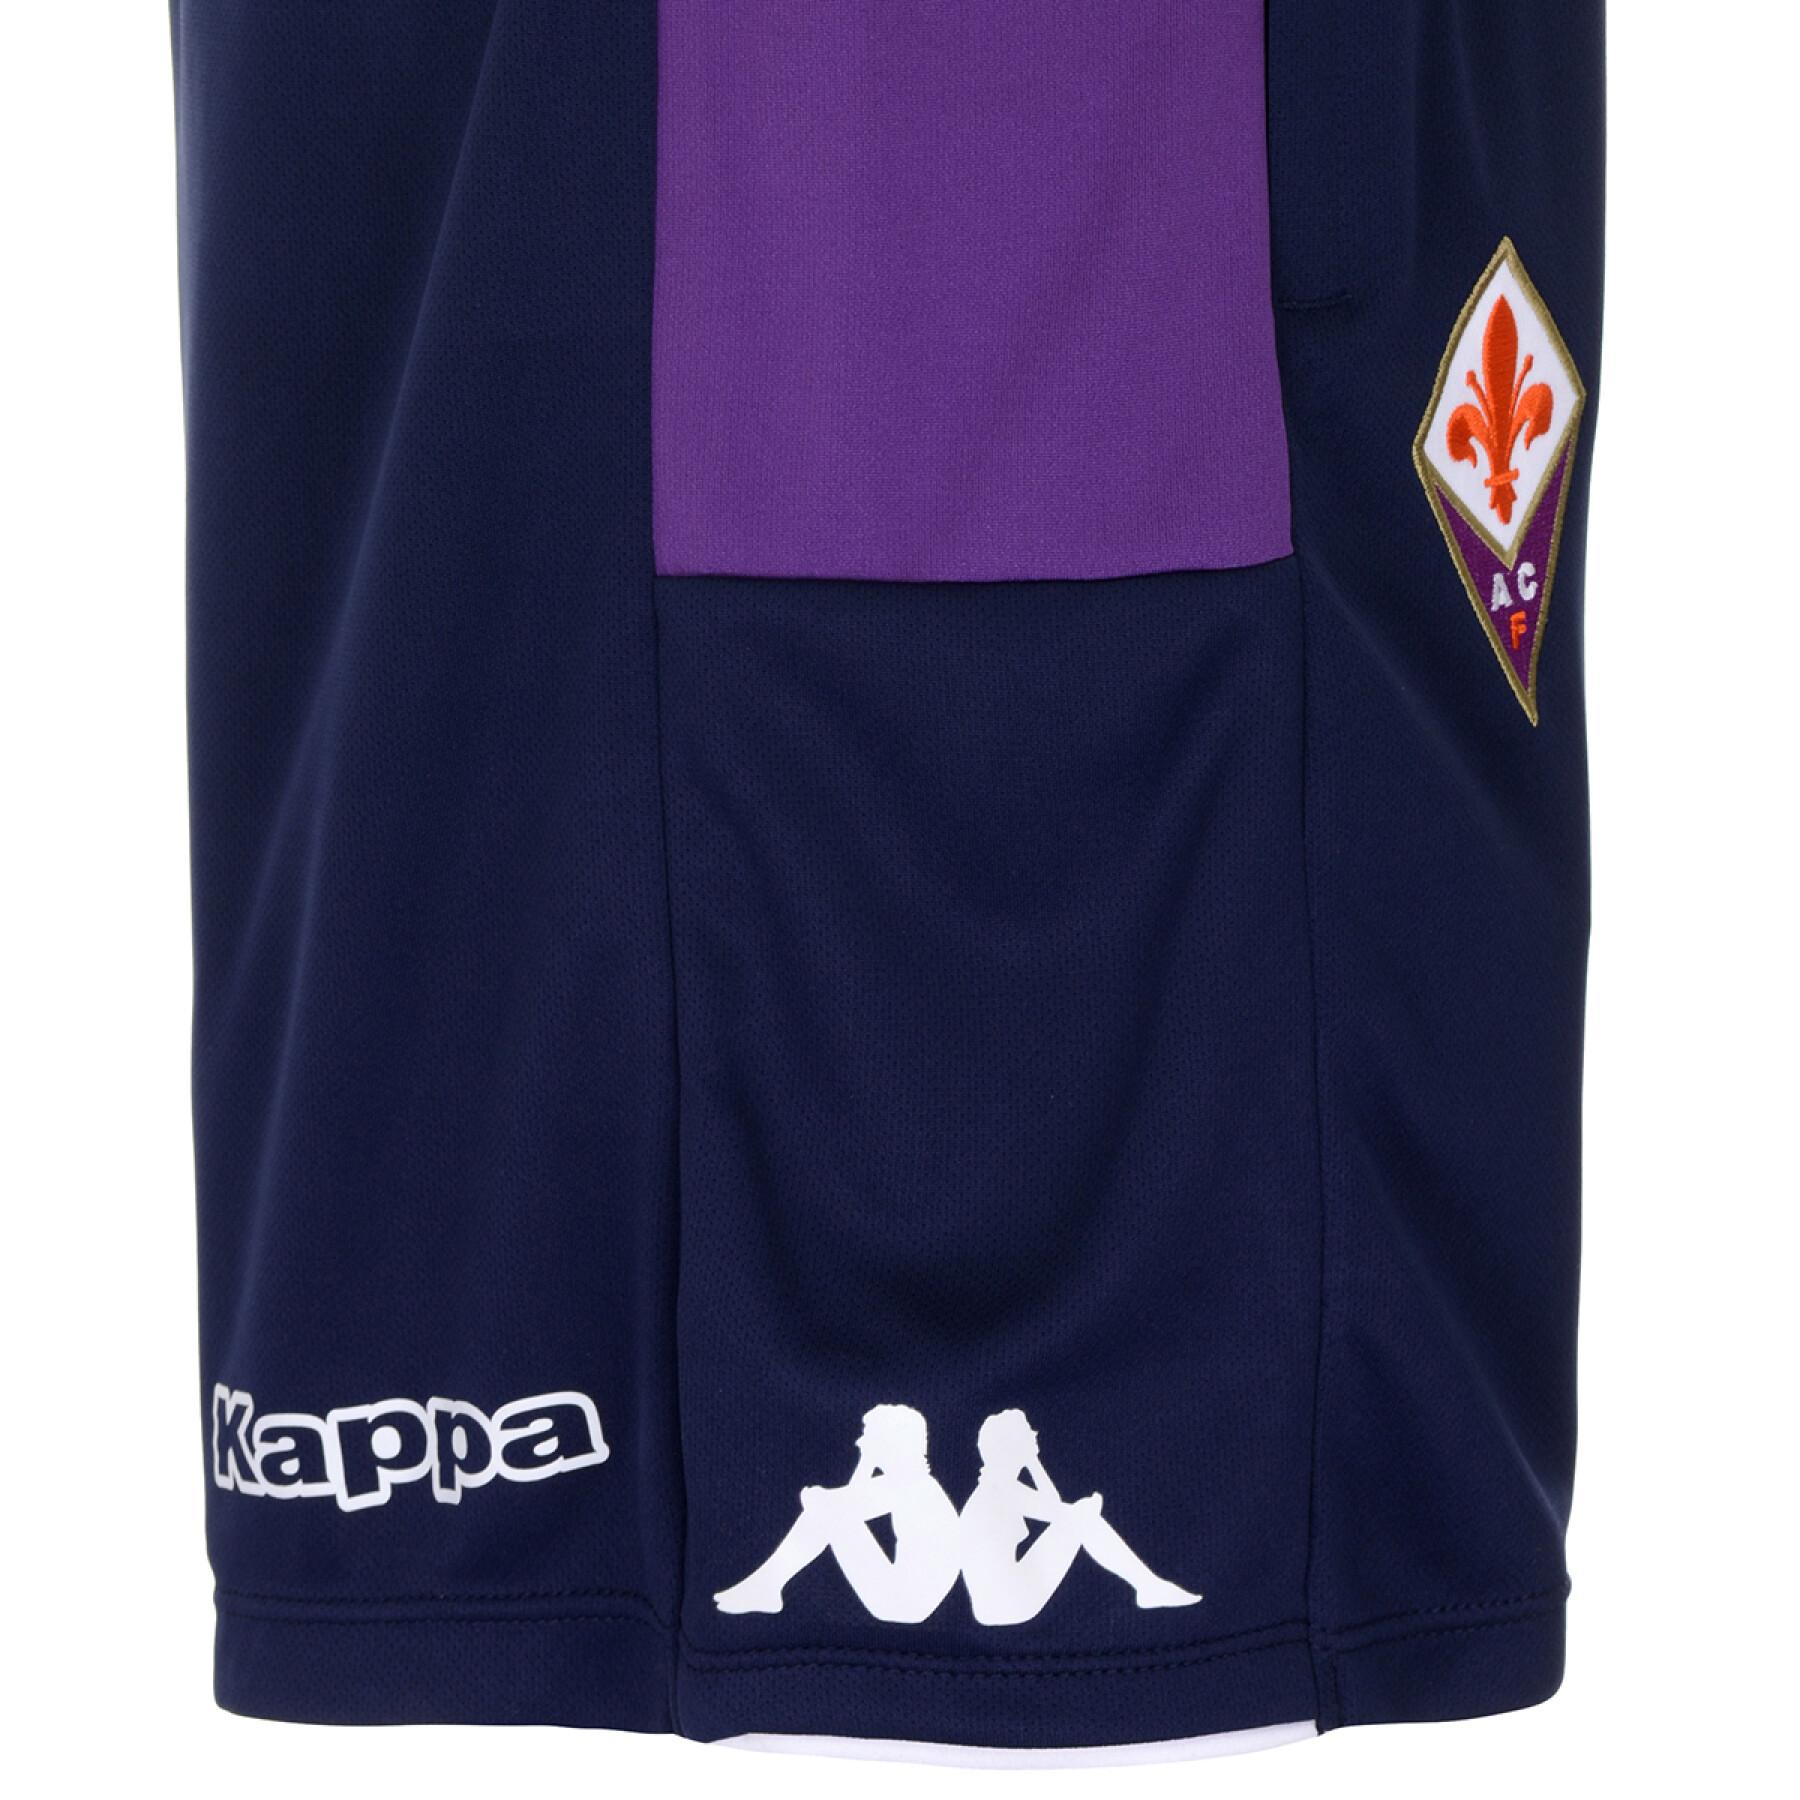 Pantaloncini Fiorentina AC 2021/22 ahorazip pro 5